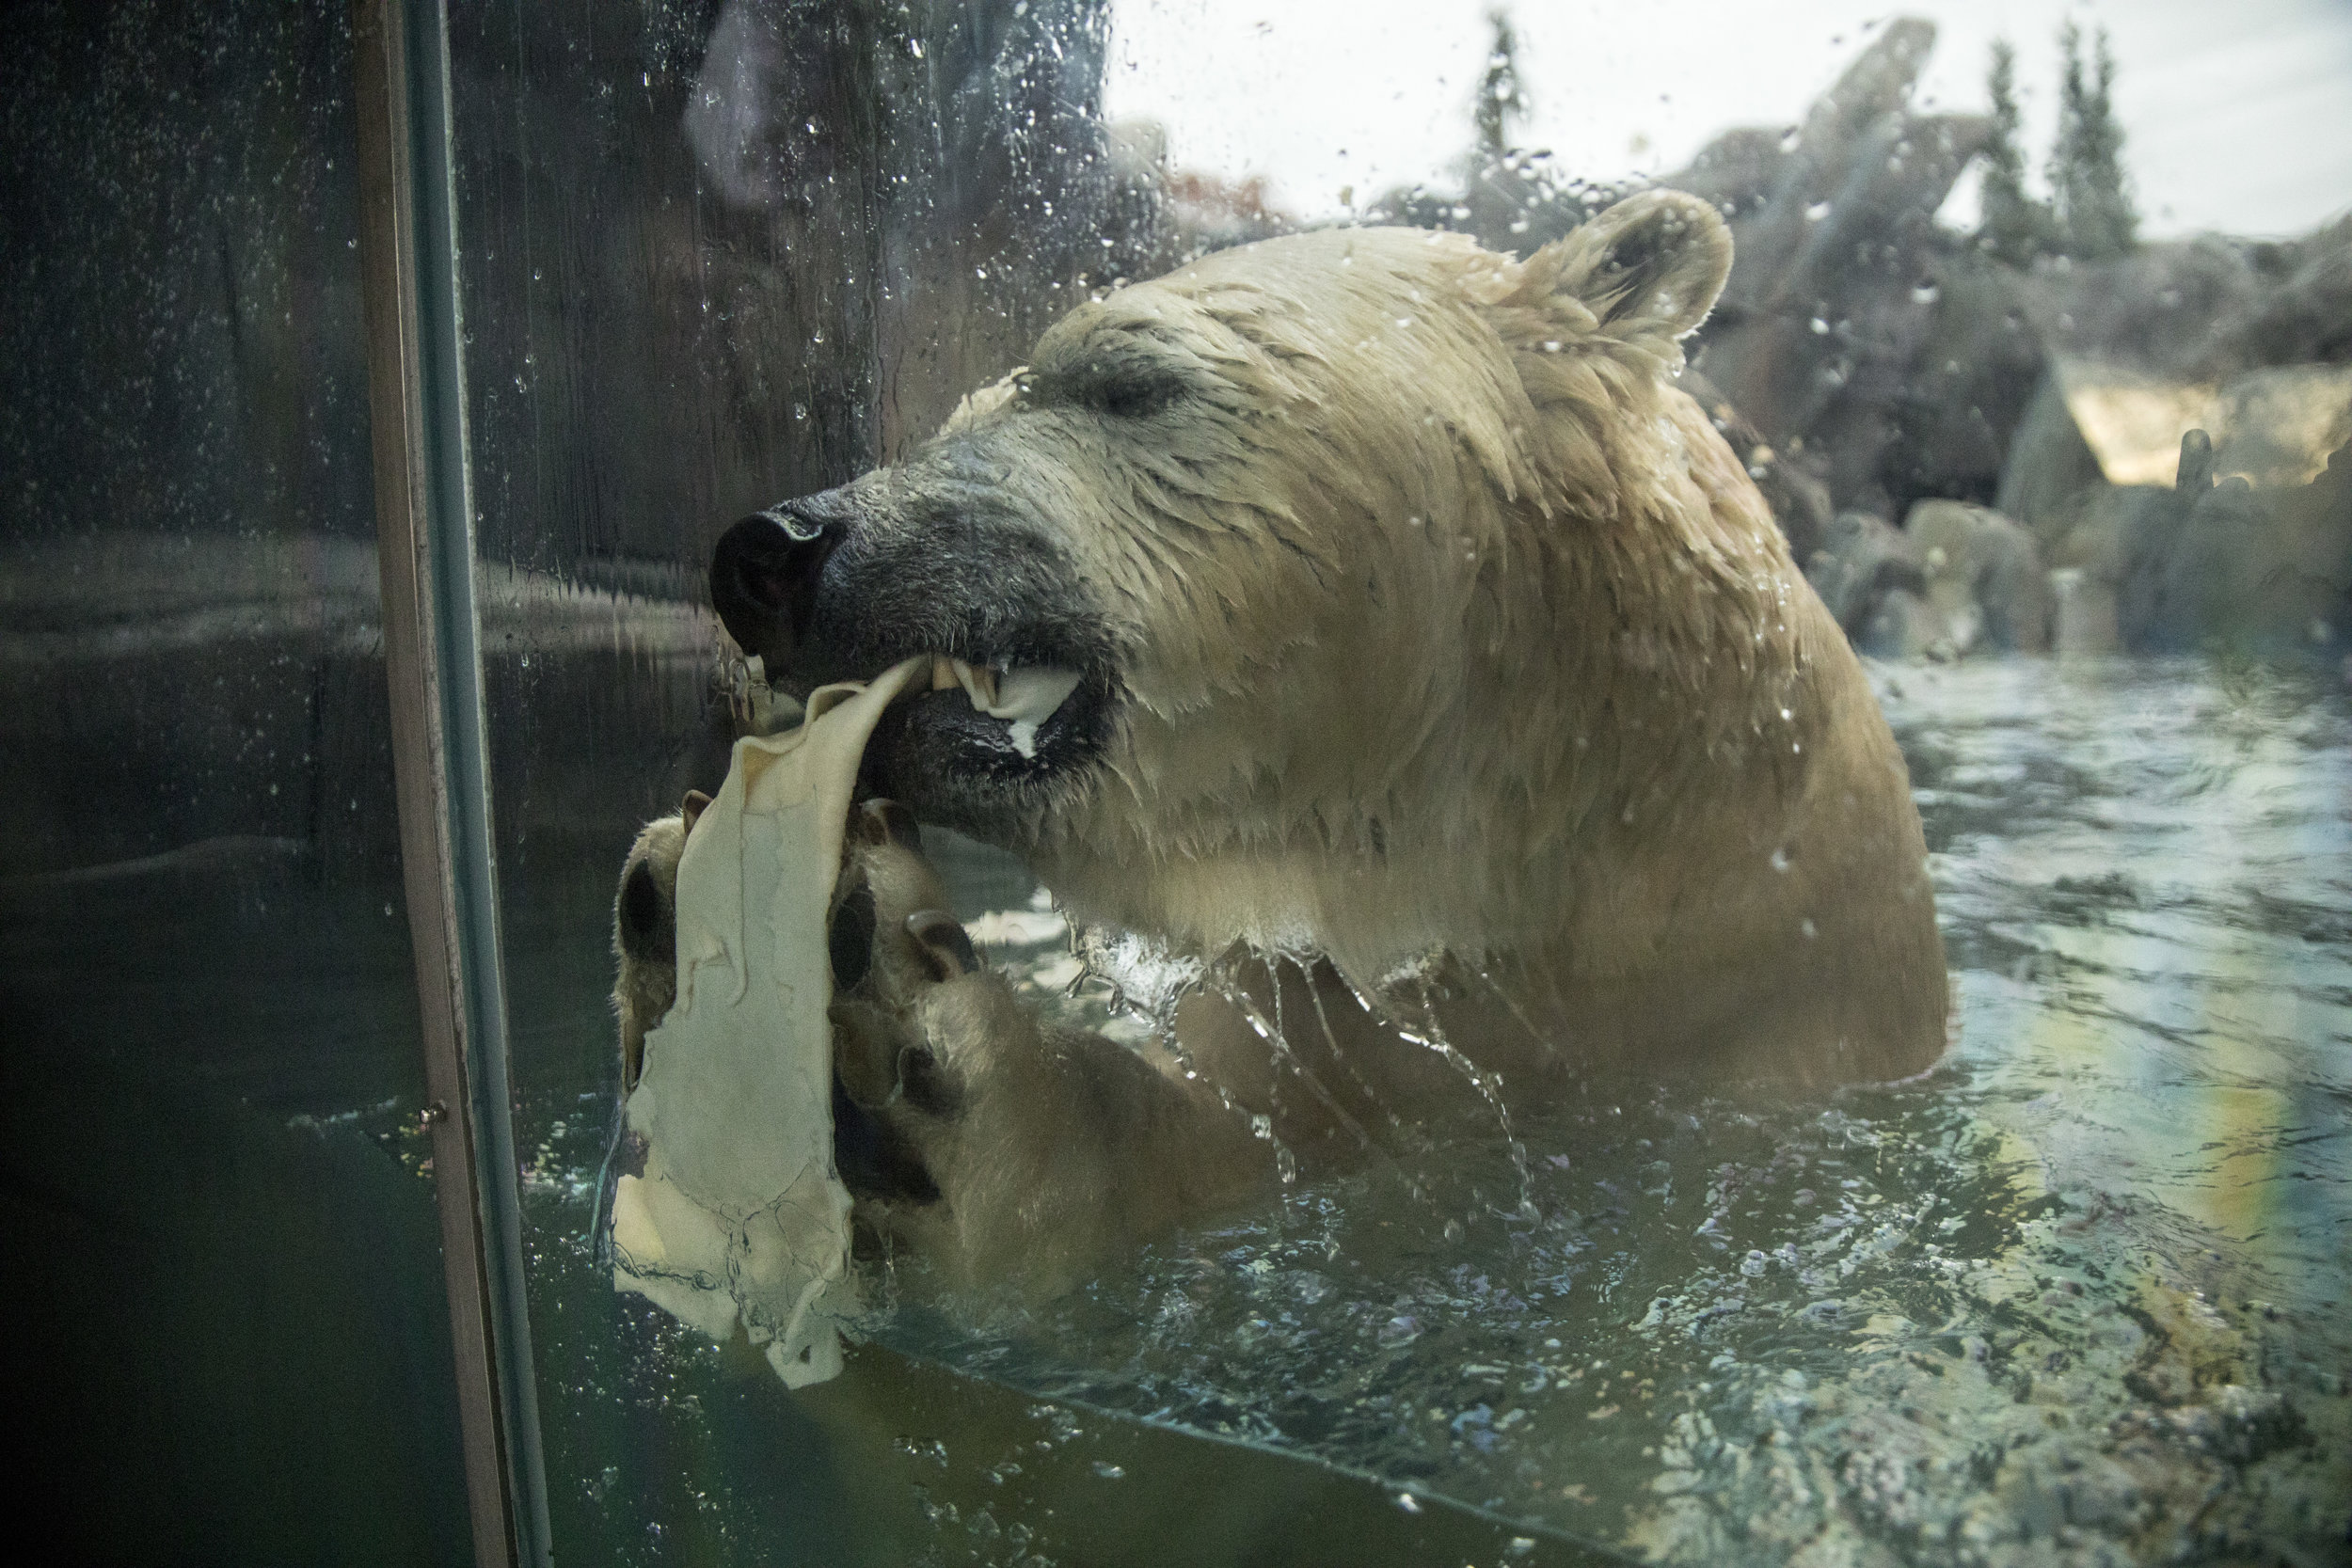 Saint_Louis_Zoo_Photography_Polar_Bear_2.jpg